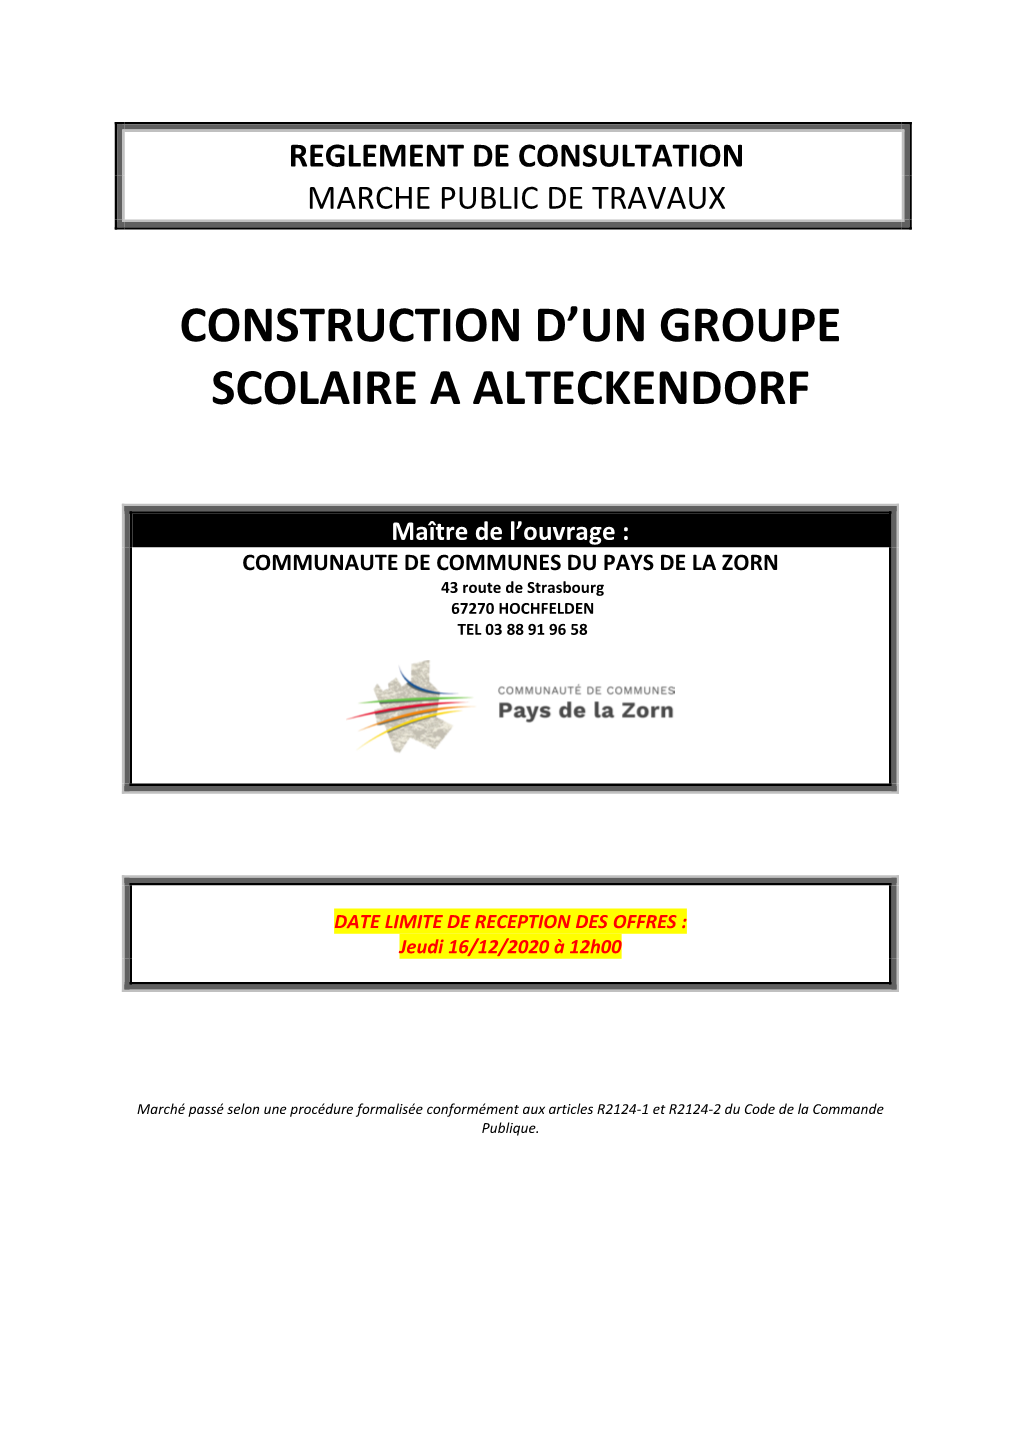 Construction D'un Groupe Scolaire a Alteckendorf